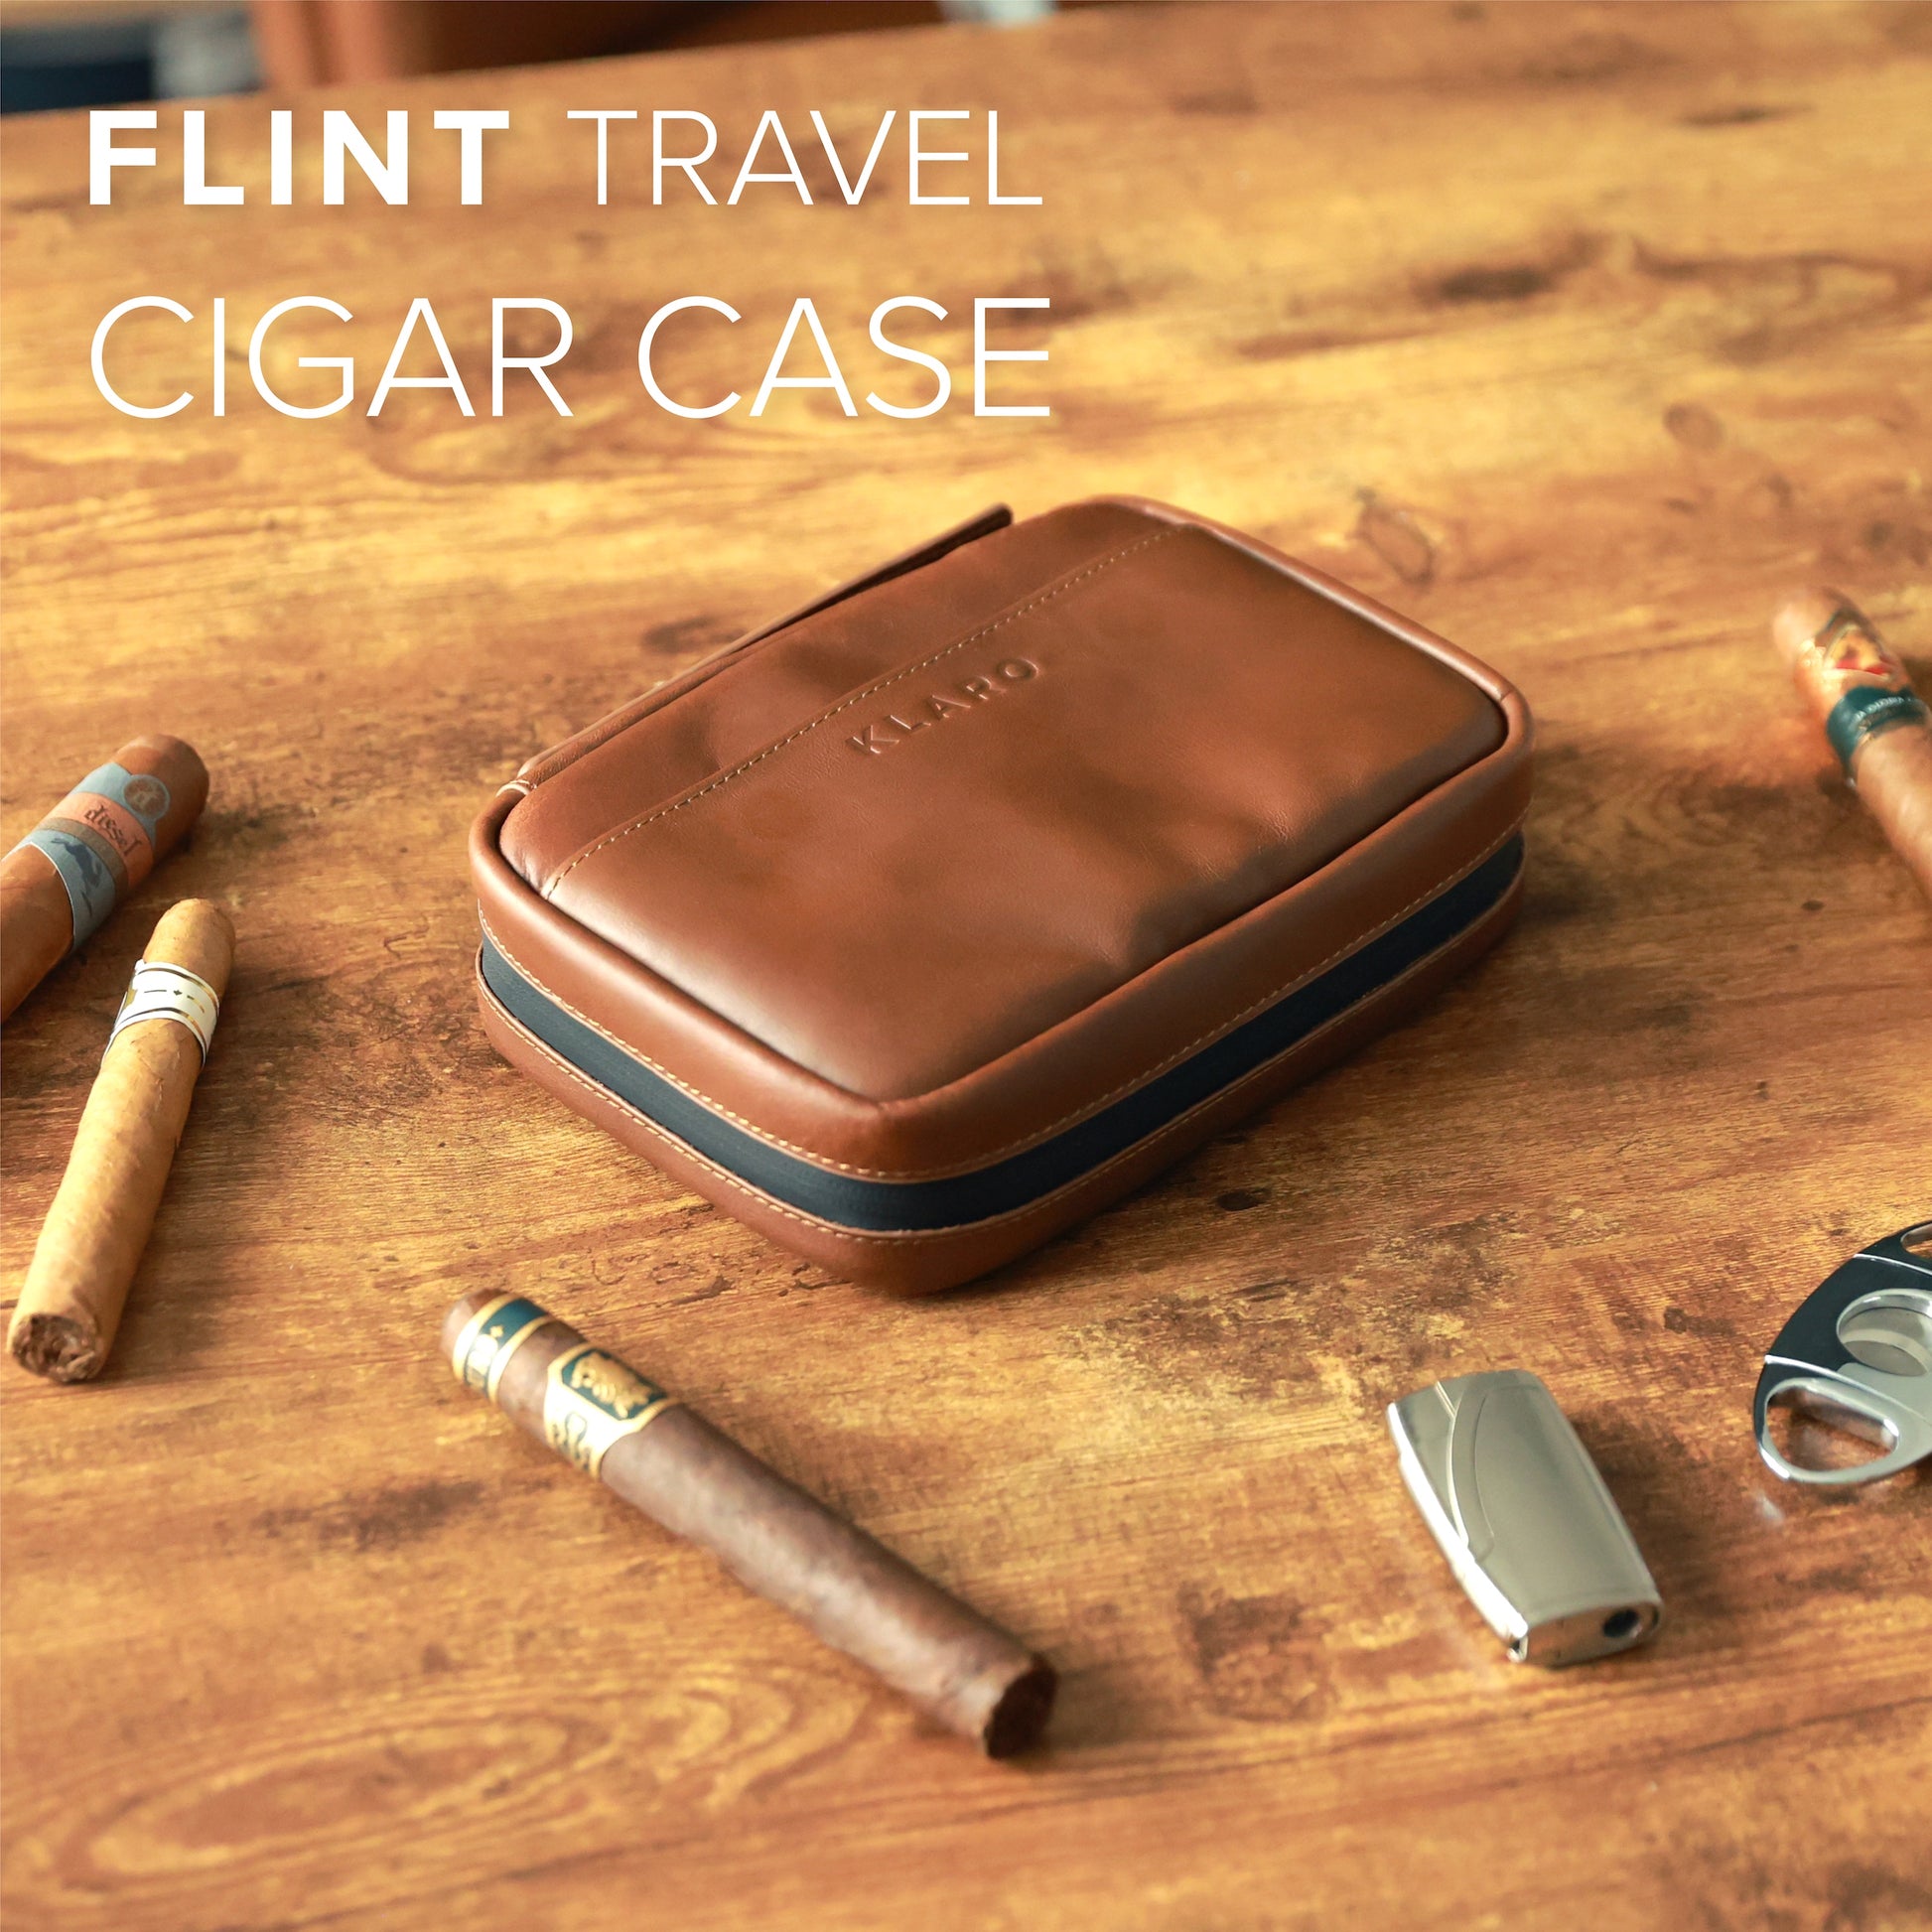 Cigarette Cigarillo Case - Chrome Finish - Double Sided